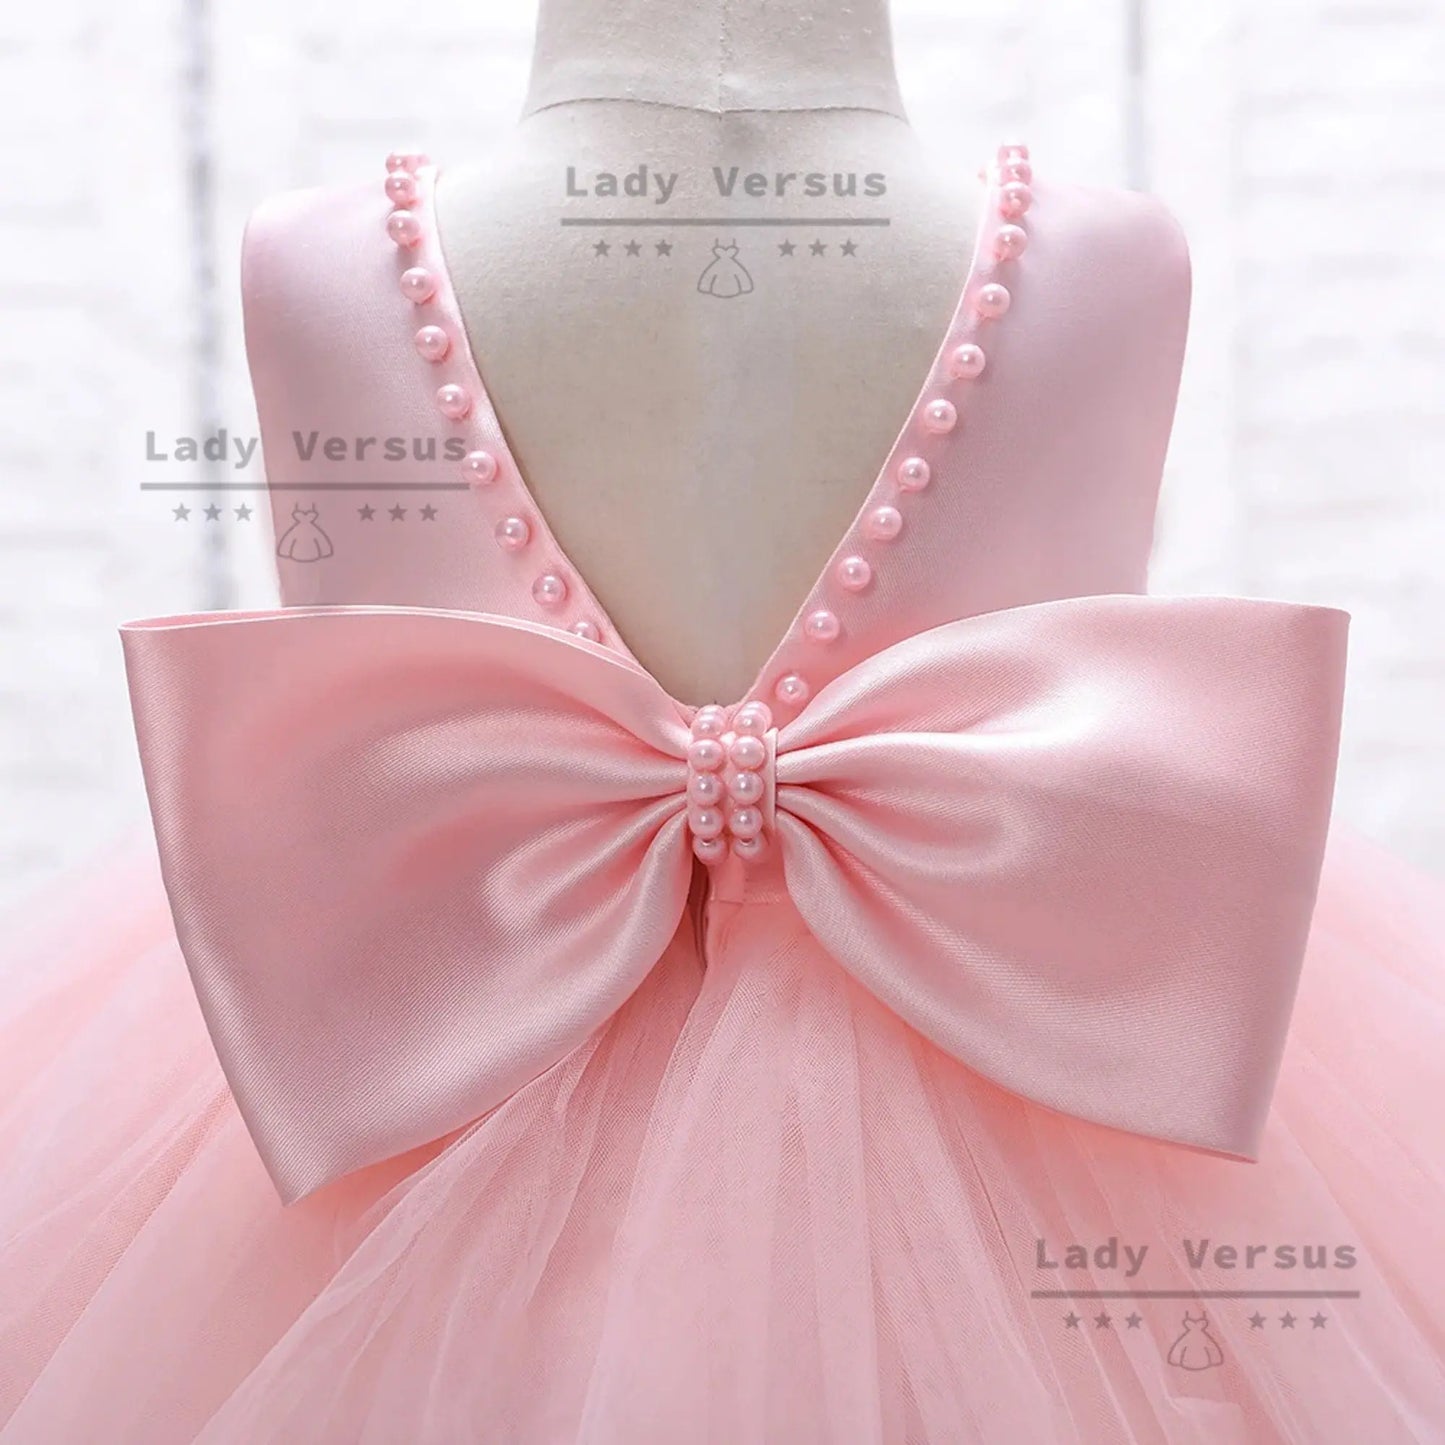 Baby Girl dress/ 1st birthday Dress  / Baby Girl Photoshoot dress/ Baby Girl Ball dress / girl birthday dress/ flower girl dress